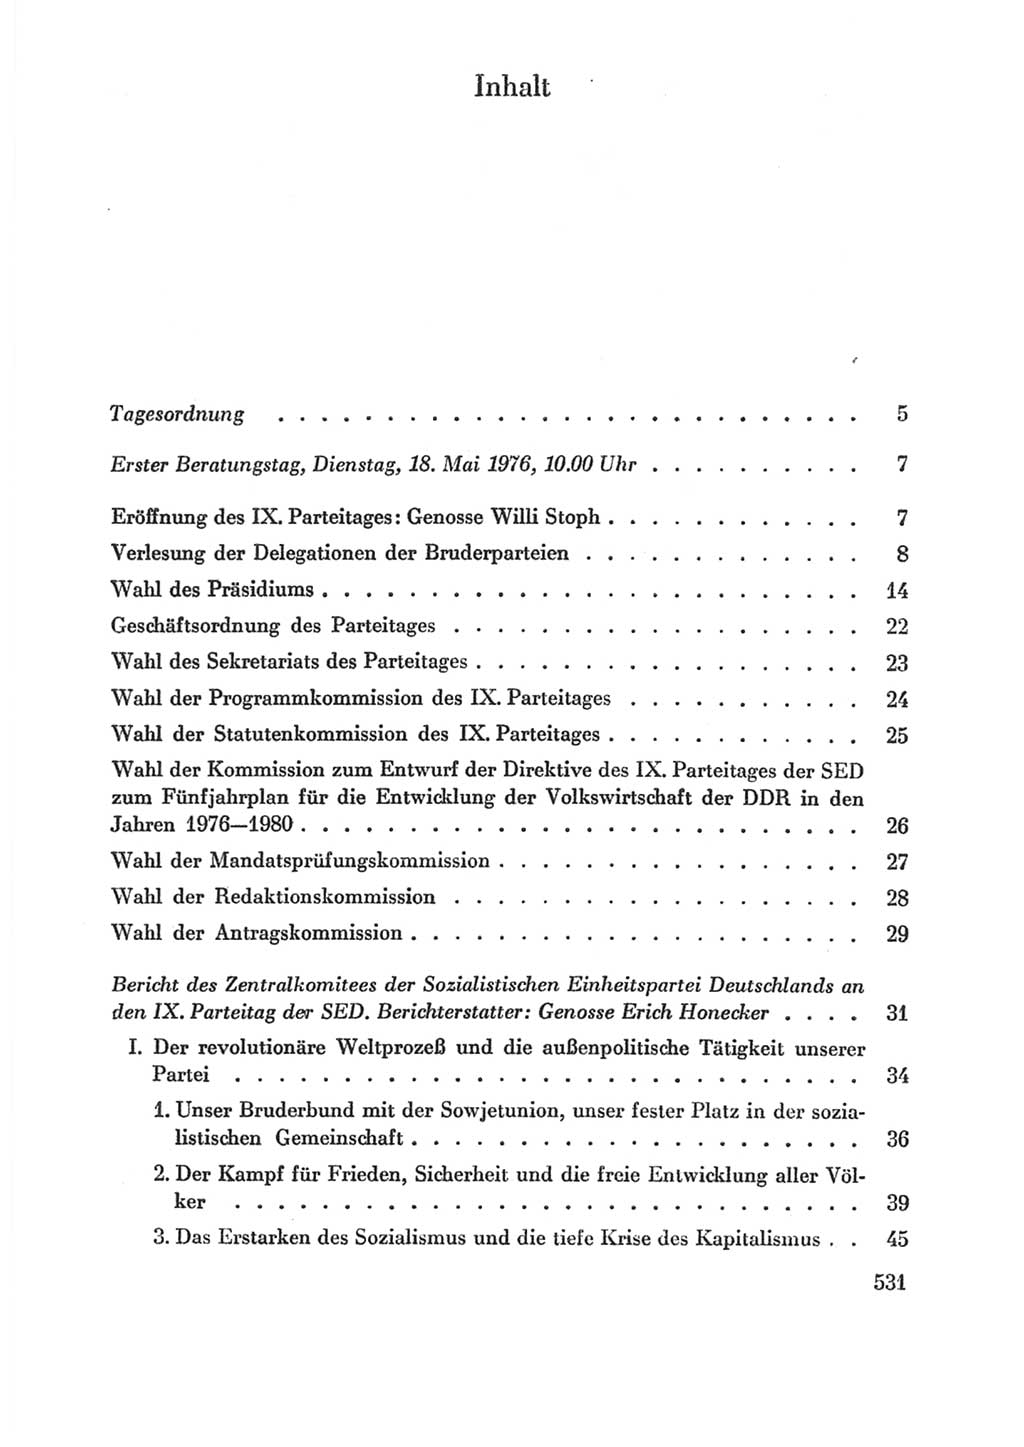 Protokoll der Verhandlungen des Ⅸ. Parteitages der Sozialistischen Einheitspartei Deutschlands (SED) [Deutsche Demokratische Republik (DDR)] 1976, Band 1, Seite 531 (Prot. Verh. Ⅸ. PT SED DDR 1976, Bd. 1, S. 531)